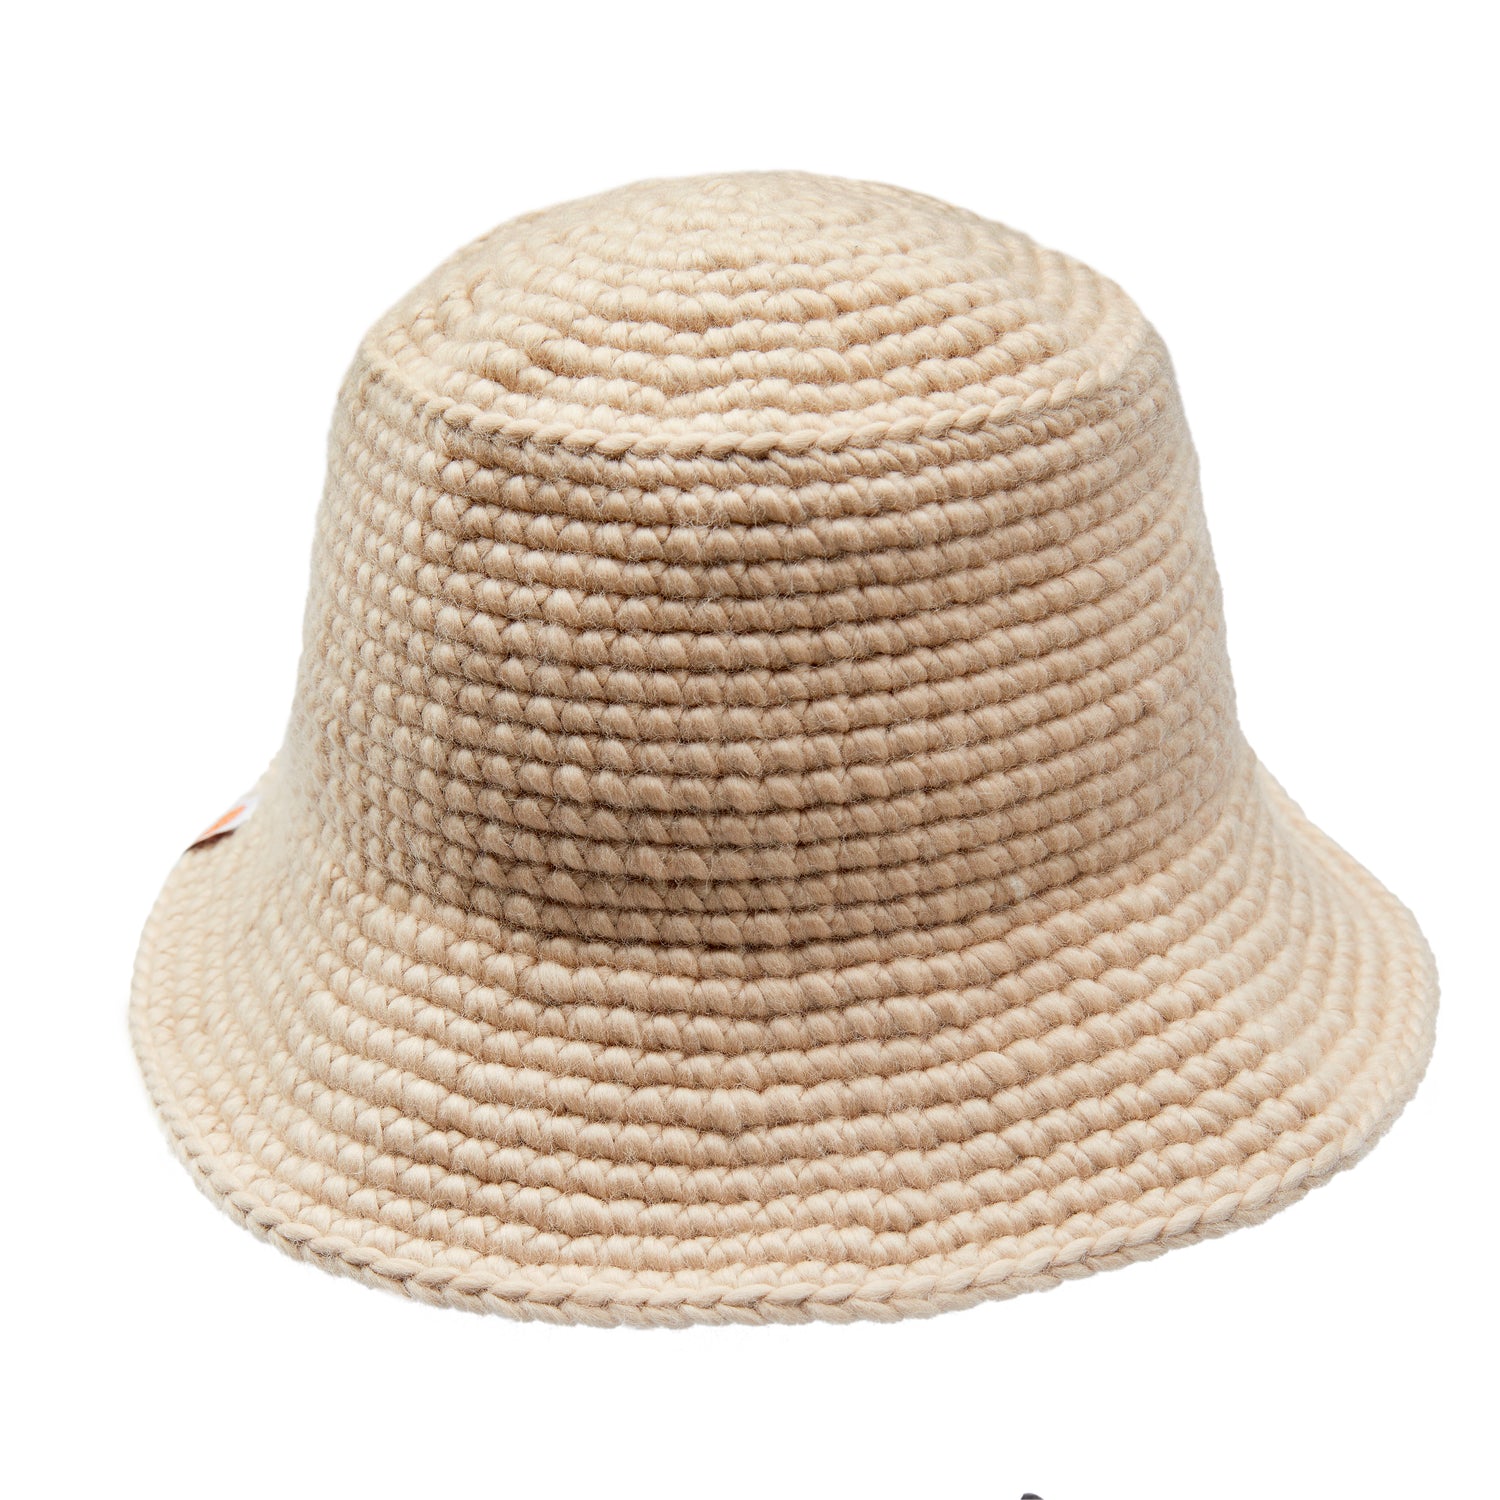 The Wool Bucket Hat